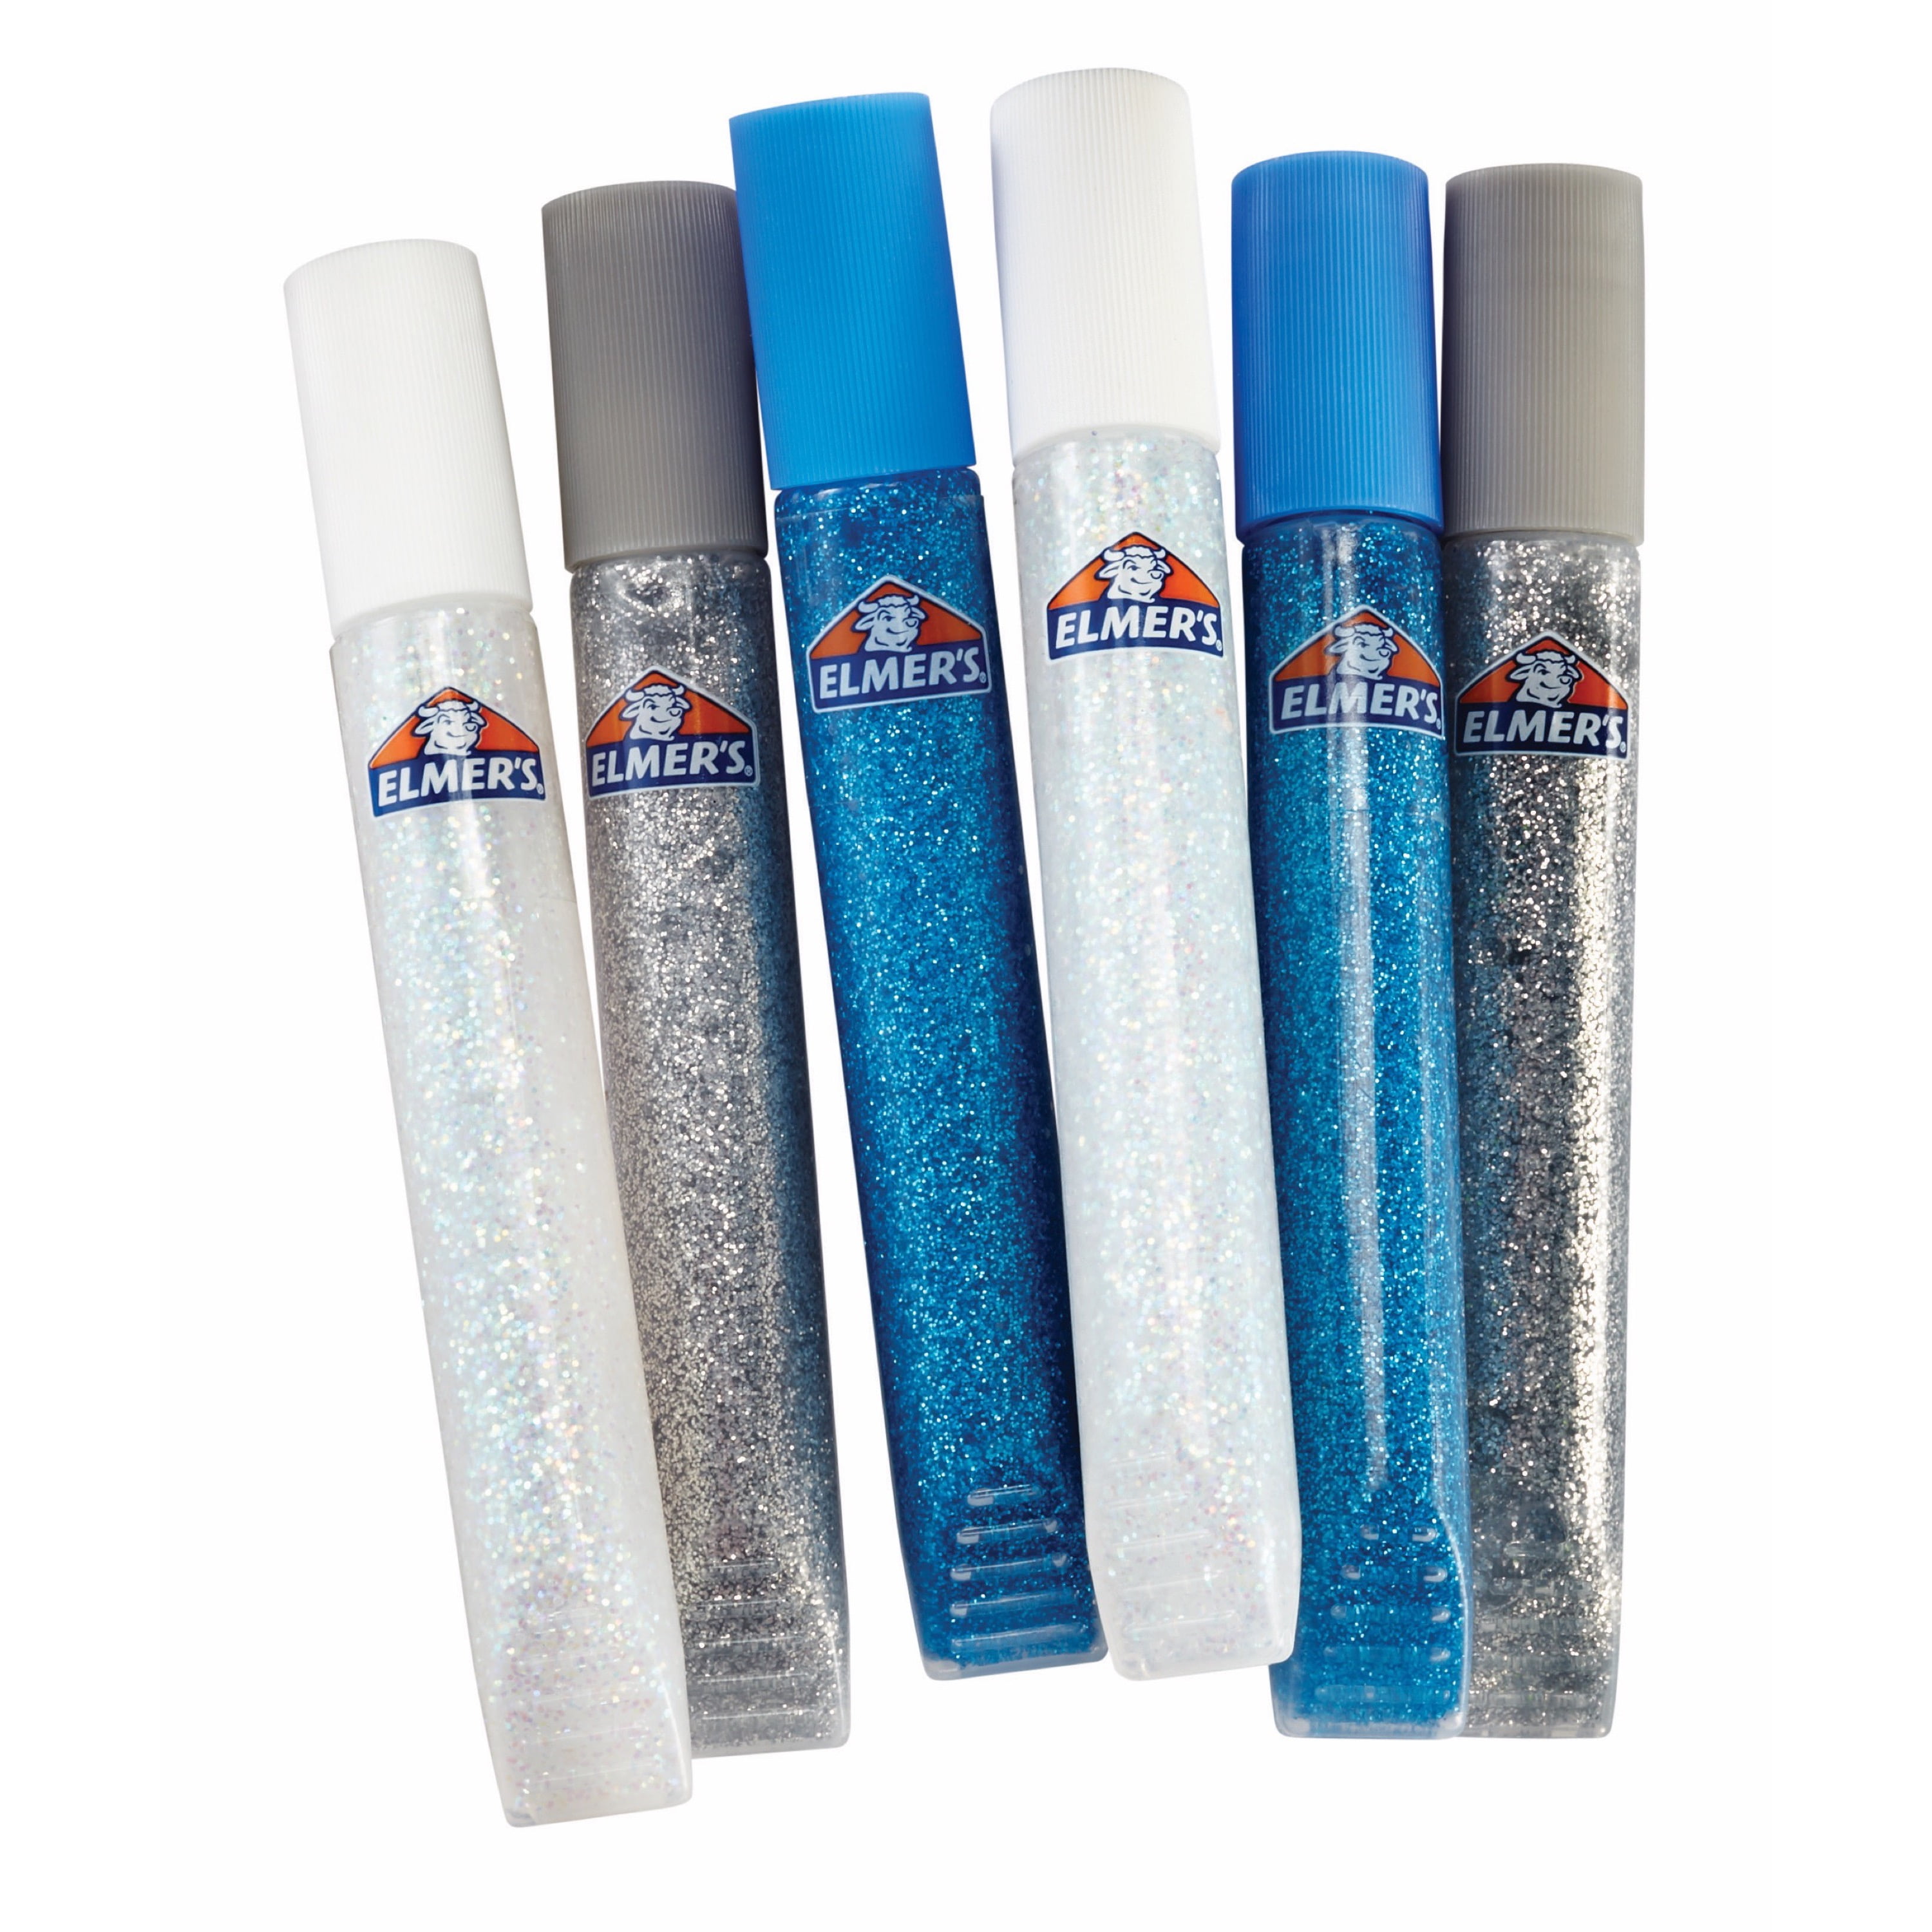 Elmer's Glue Deluxe Starter Slime Kit | Slime Supplies | Clear School Glue  & Glitter Glue Pens, 3 Count